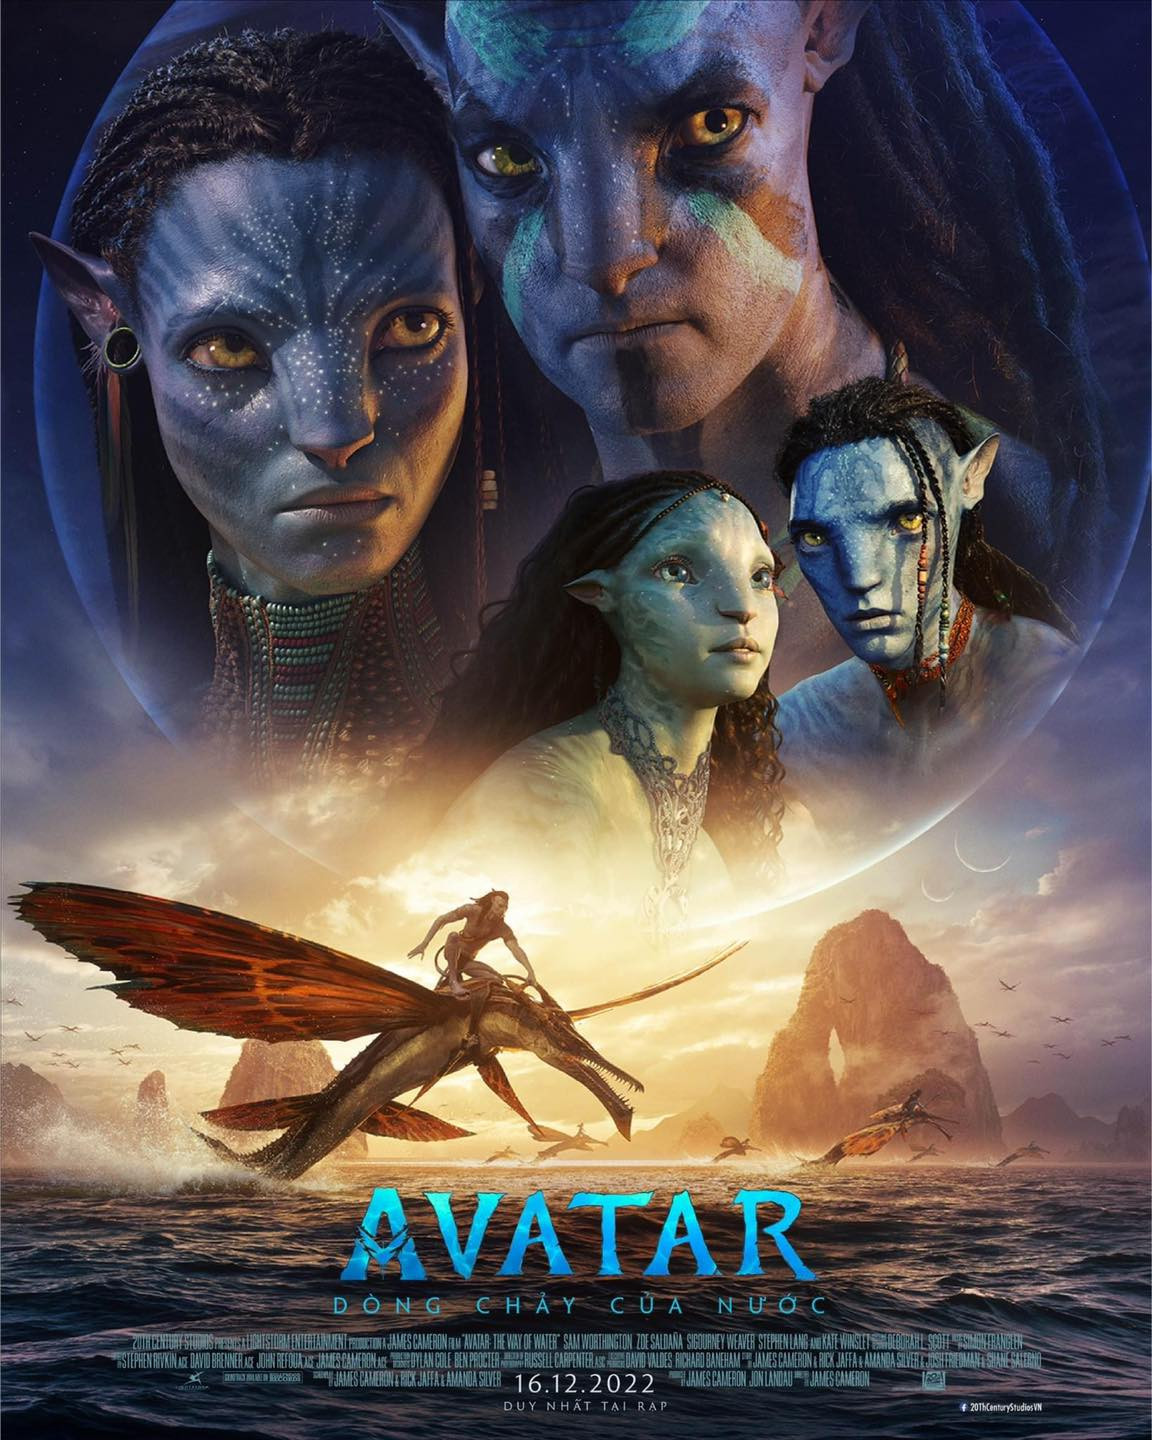 Về Đạo thao diễn (Directing) của phim giá bán vé 3 chiều Avatar 2 CGV